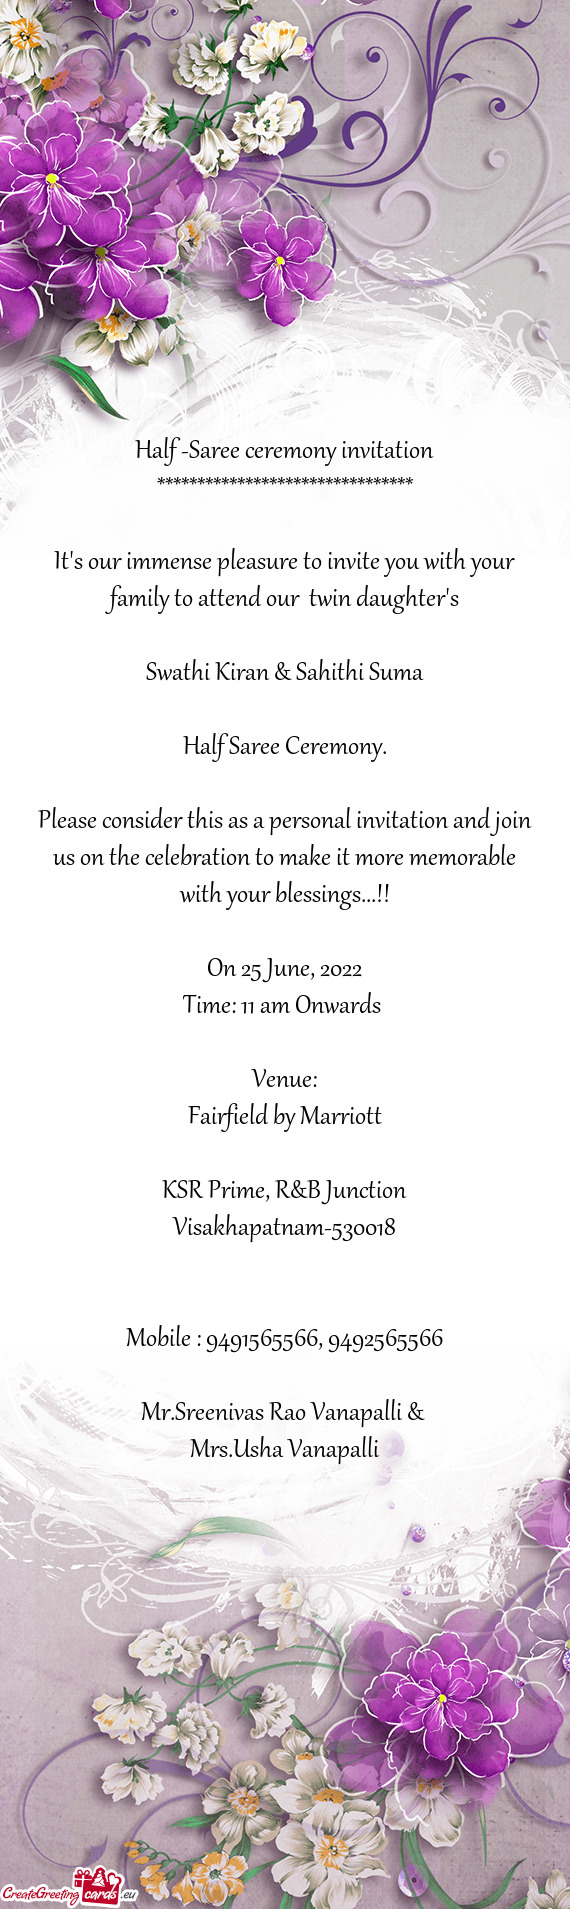 Half -Saree ceremony invitation